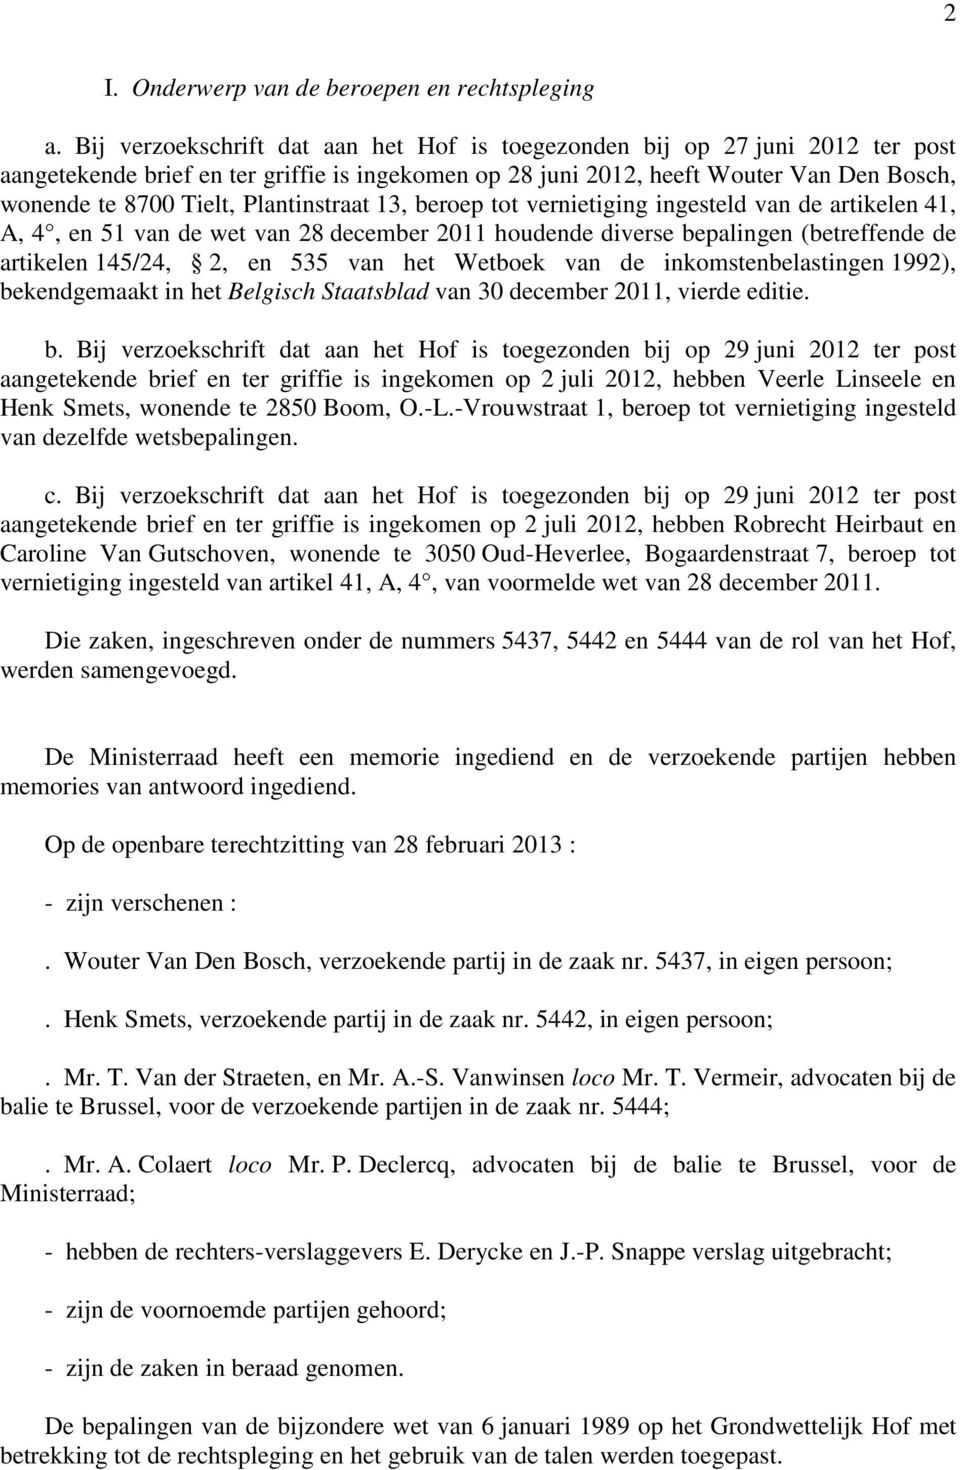 Plantinstraat 13, beroep tot vernietiging ingesteld van de artikelen 41, A, 4, en 51 van de wet van 28 december 2011 houdende diverse bepalingen (betreffende de artikelen 145/24, 2, en 535 van het